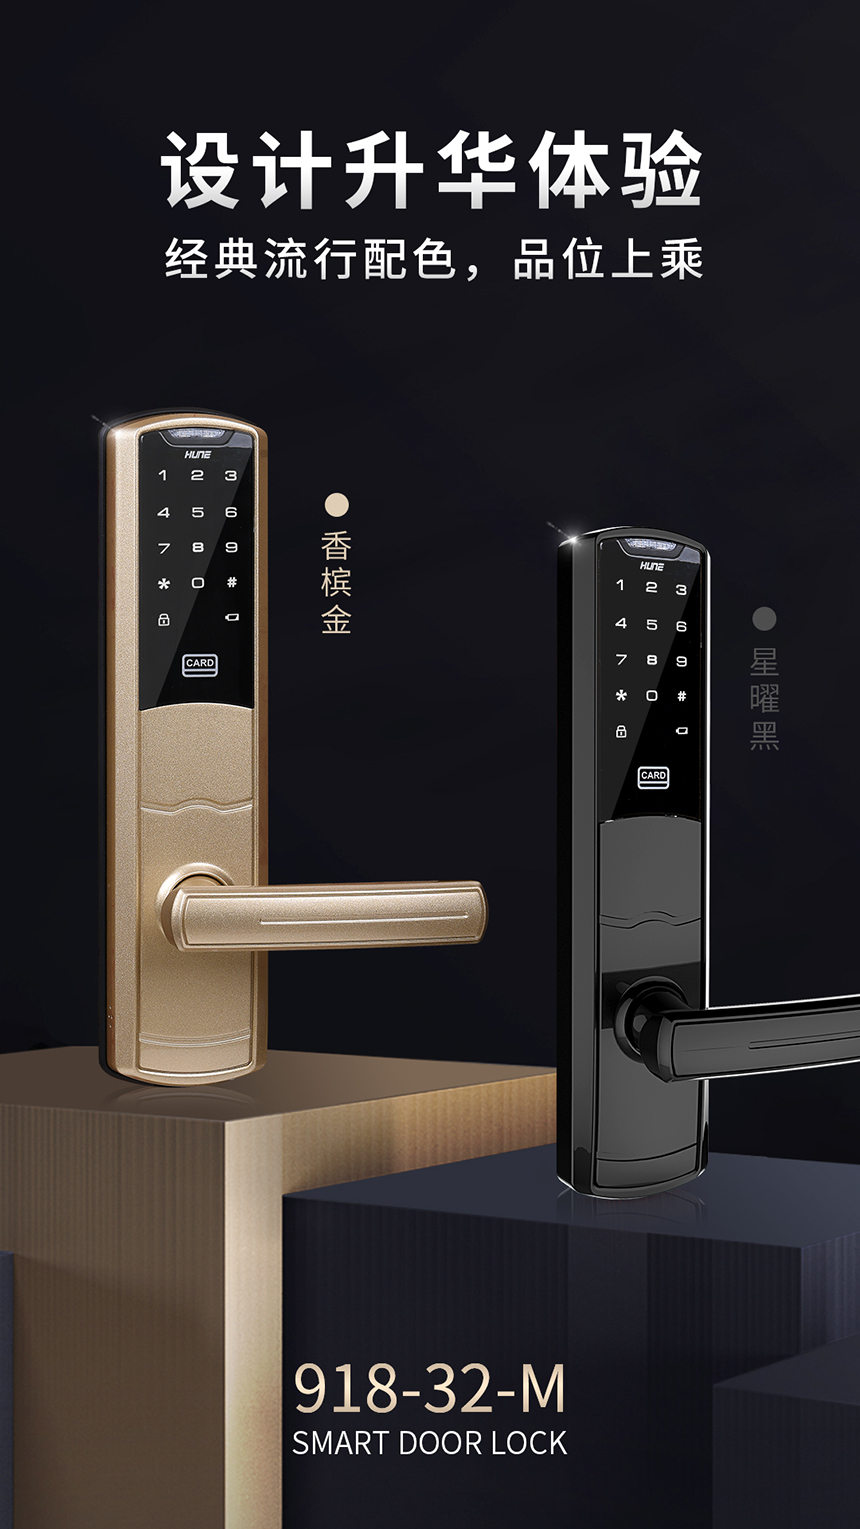 科裕智能科技公寓锁918-32-M介绍